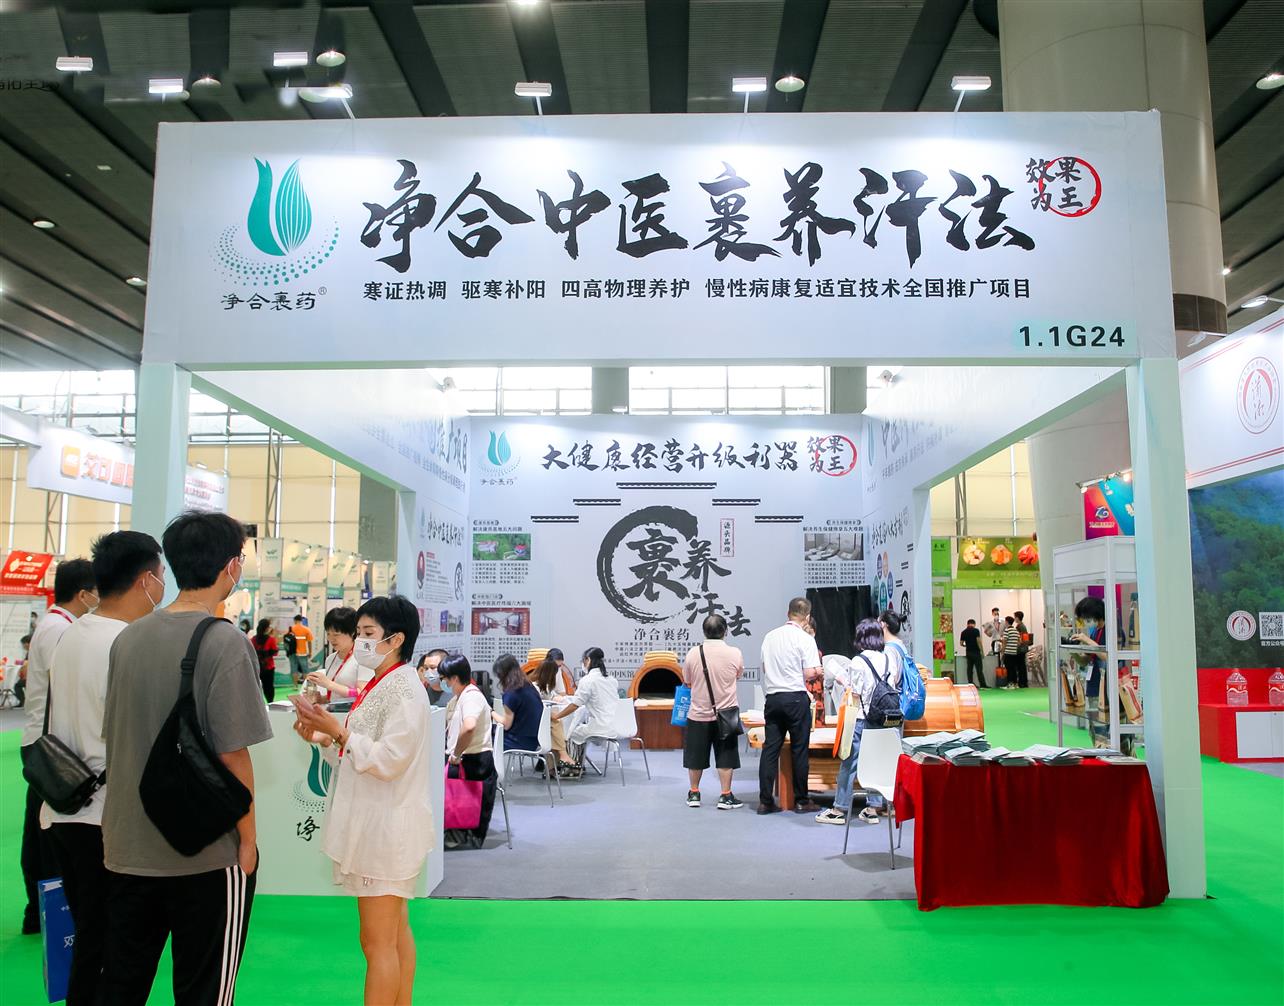 2022中国大健康展览会